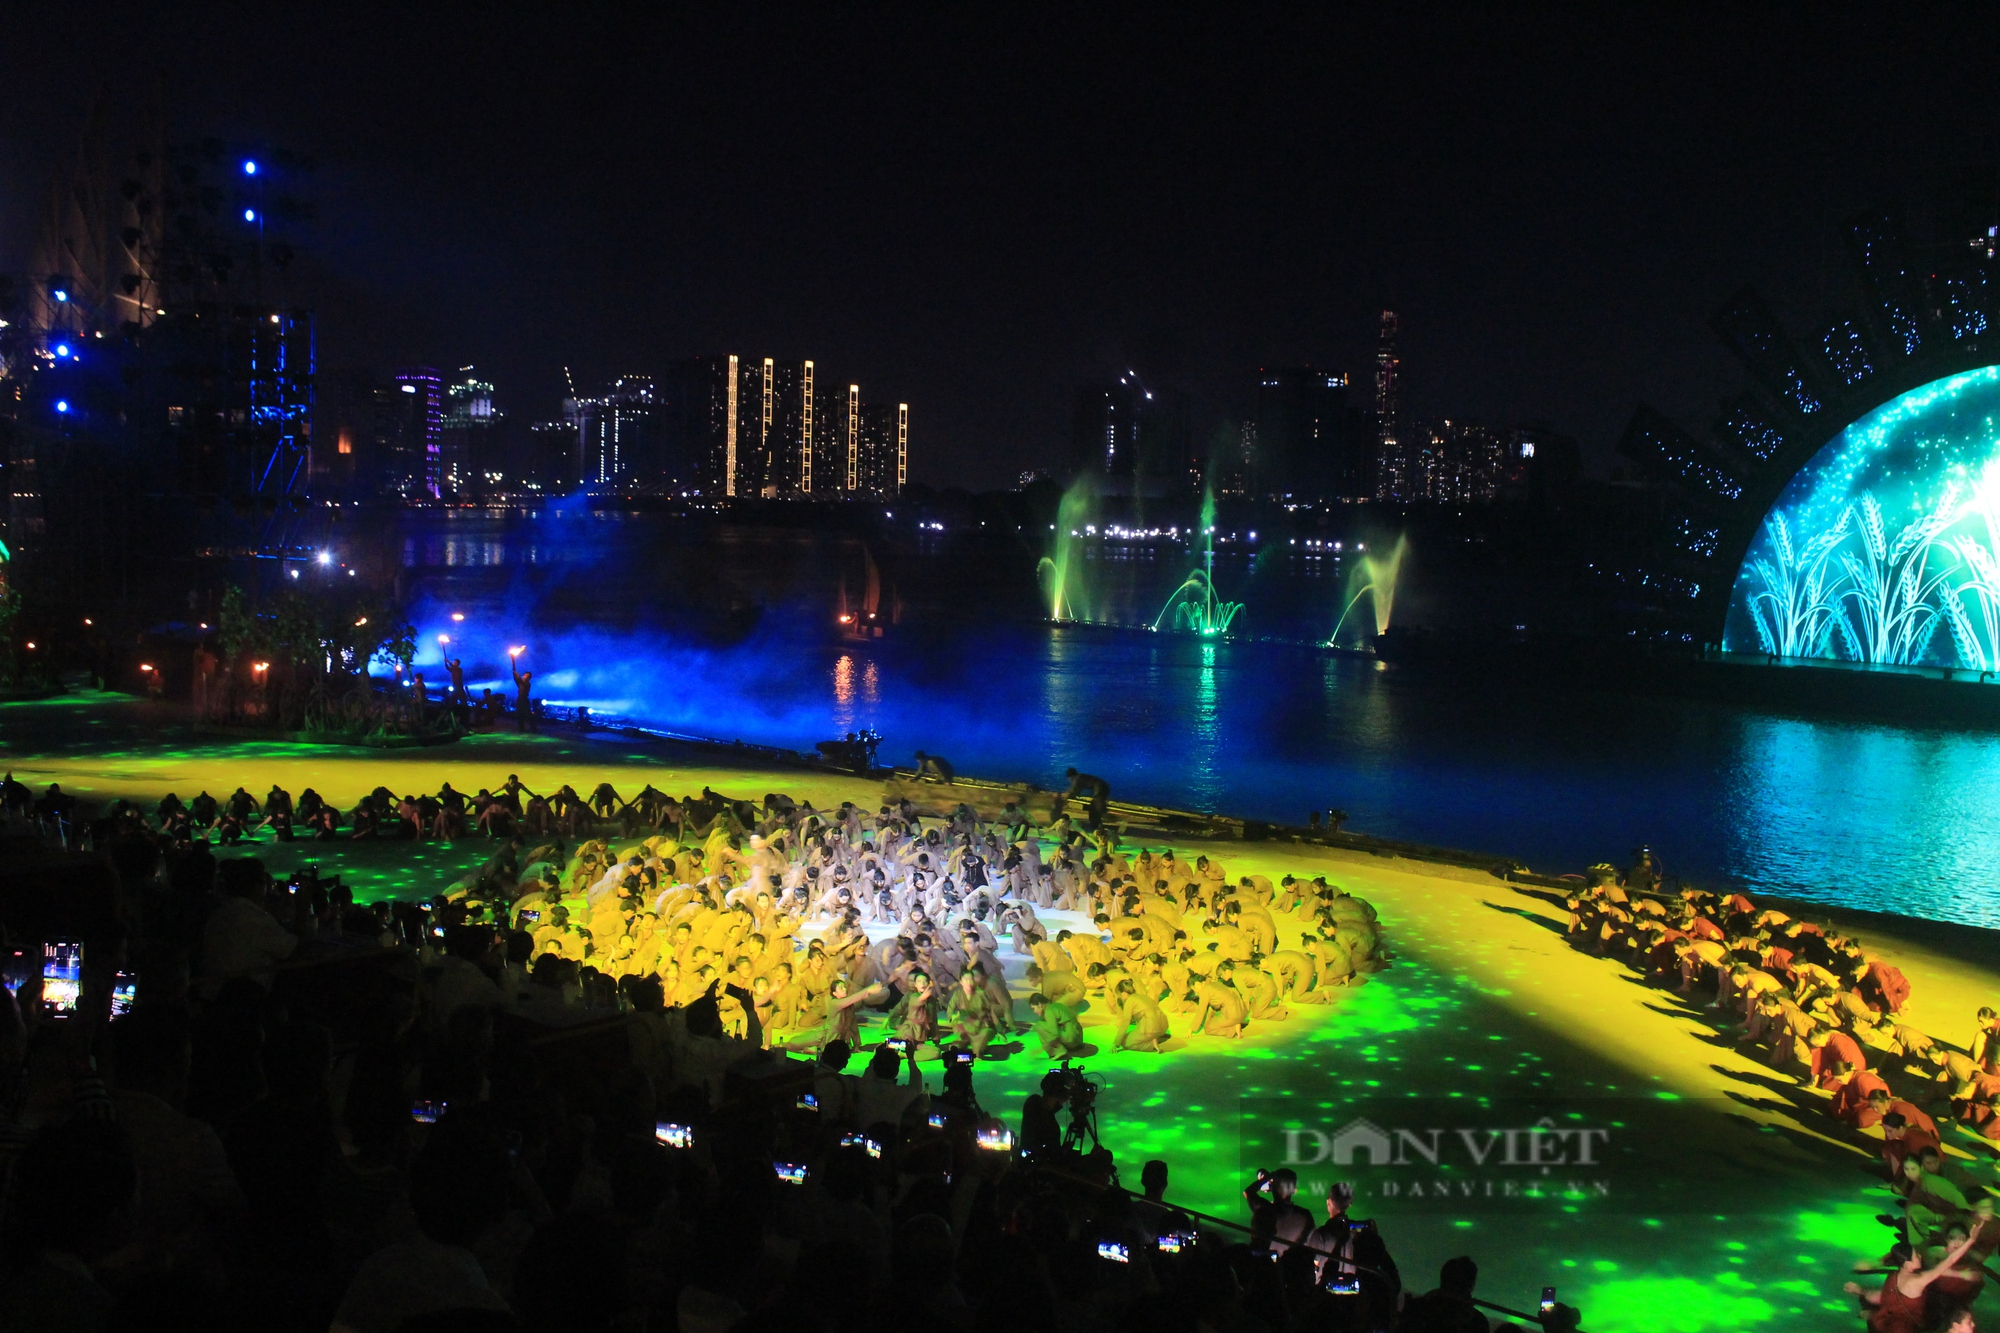 Mãn nhãn đêm nghệ thuật Dòng sông kể chuyện, 700 diễn viên biểu diễn trên sông Sài Gòn - Ảnh 2.